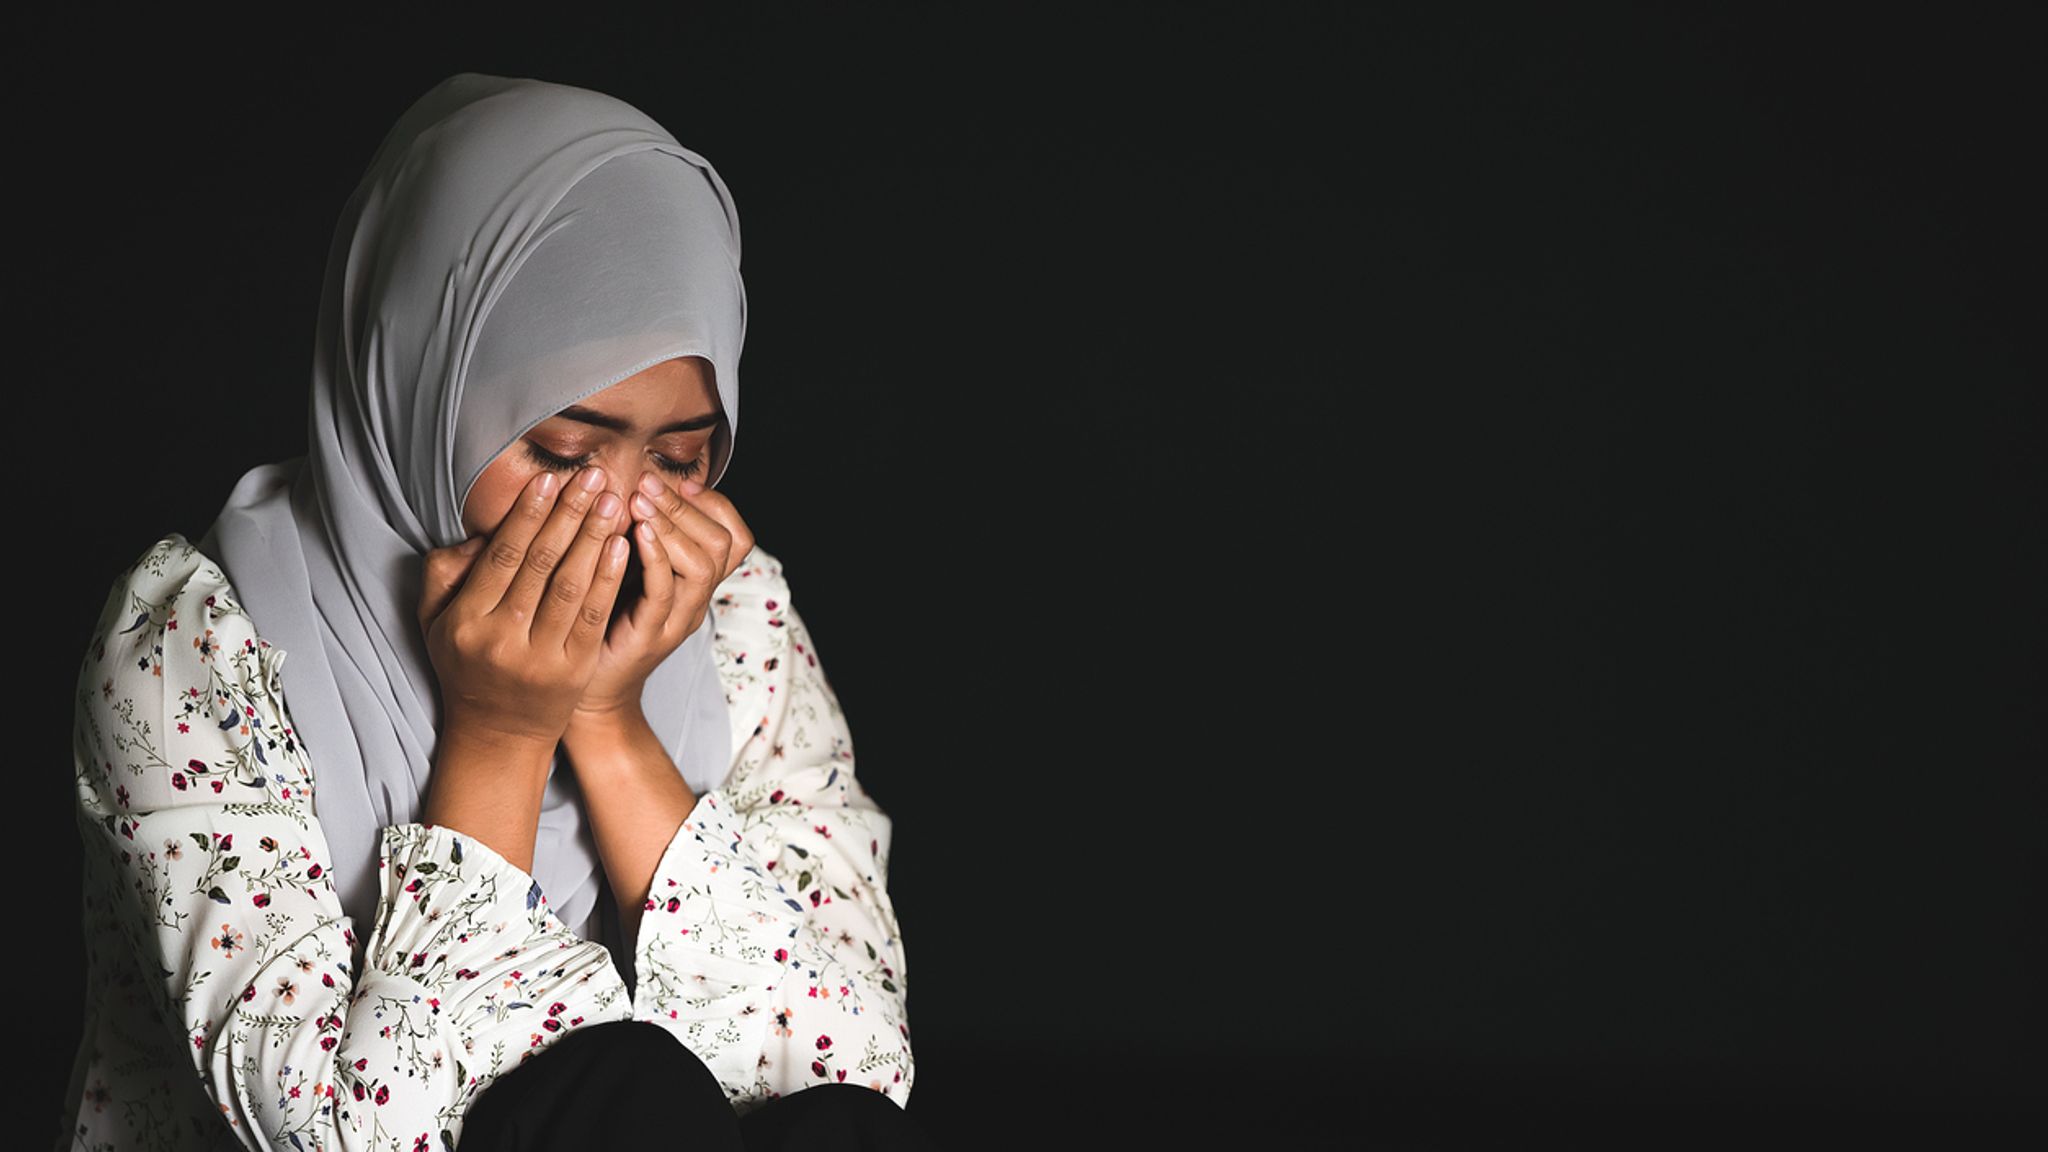 Мусульманские плачет. Слезы мусульманки. Мусульманская женщина плачет. Мусульманские девушки плачущие. Мусульманка плачет.